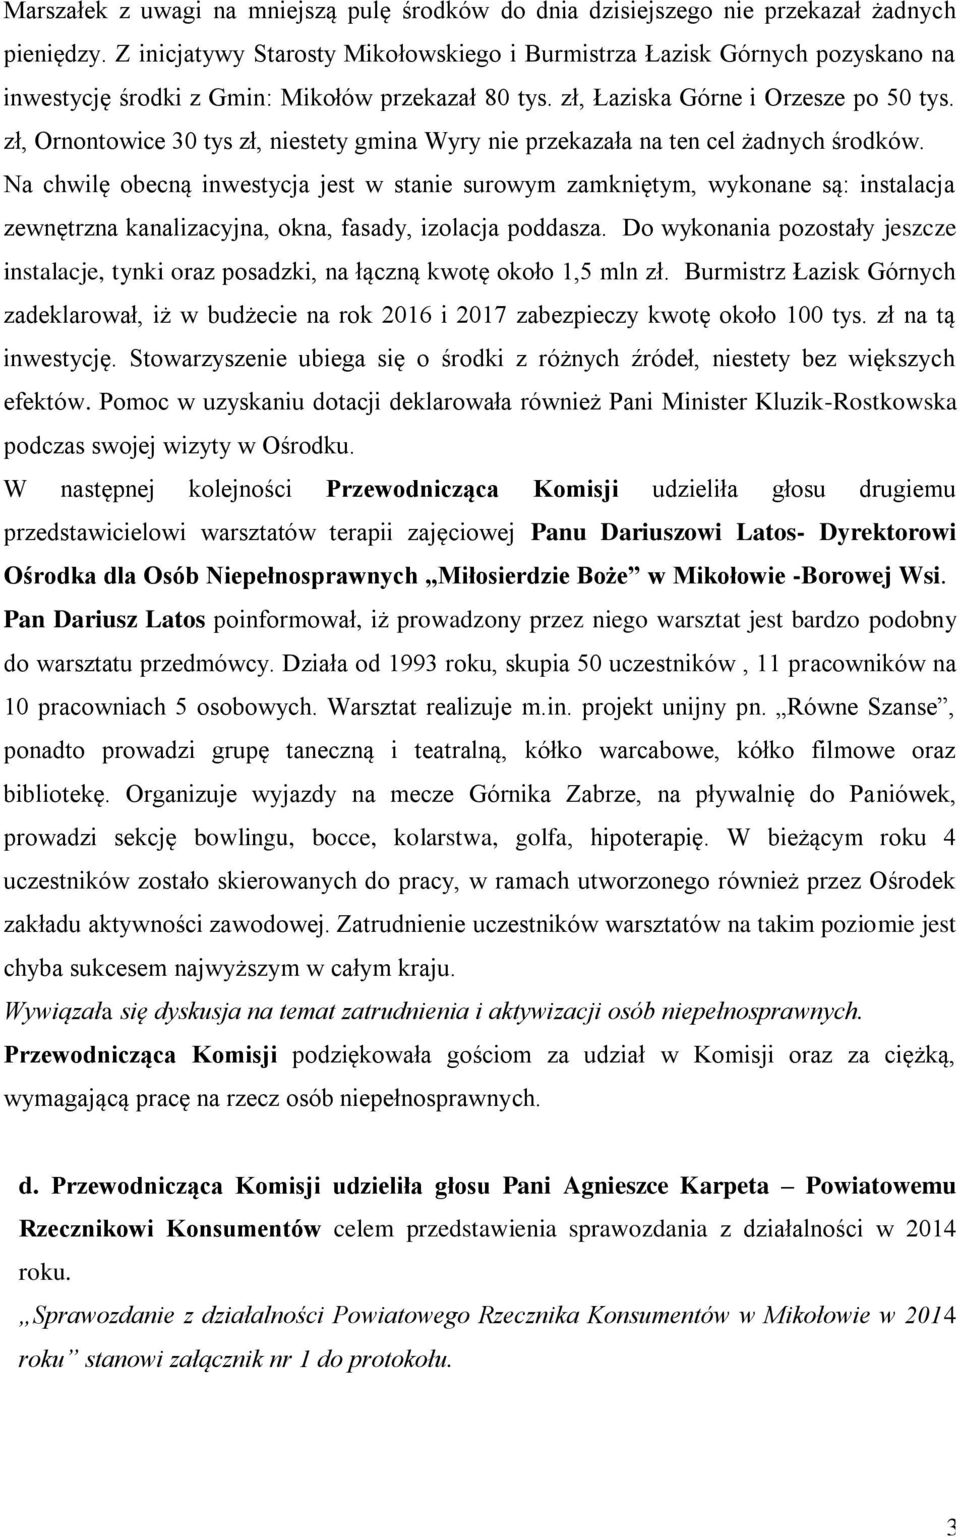 zł, Ornontowice 30 tys zł, niestety gmina Wyry nie przekazała na ten cel żadnych środków.